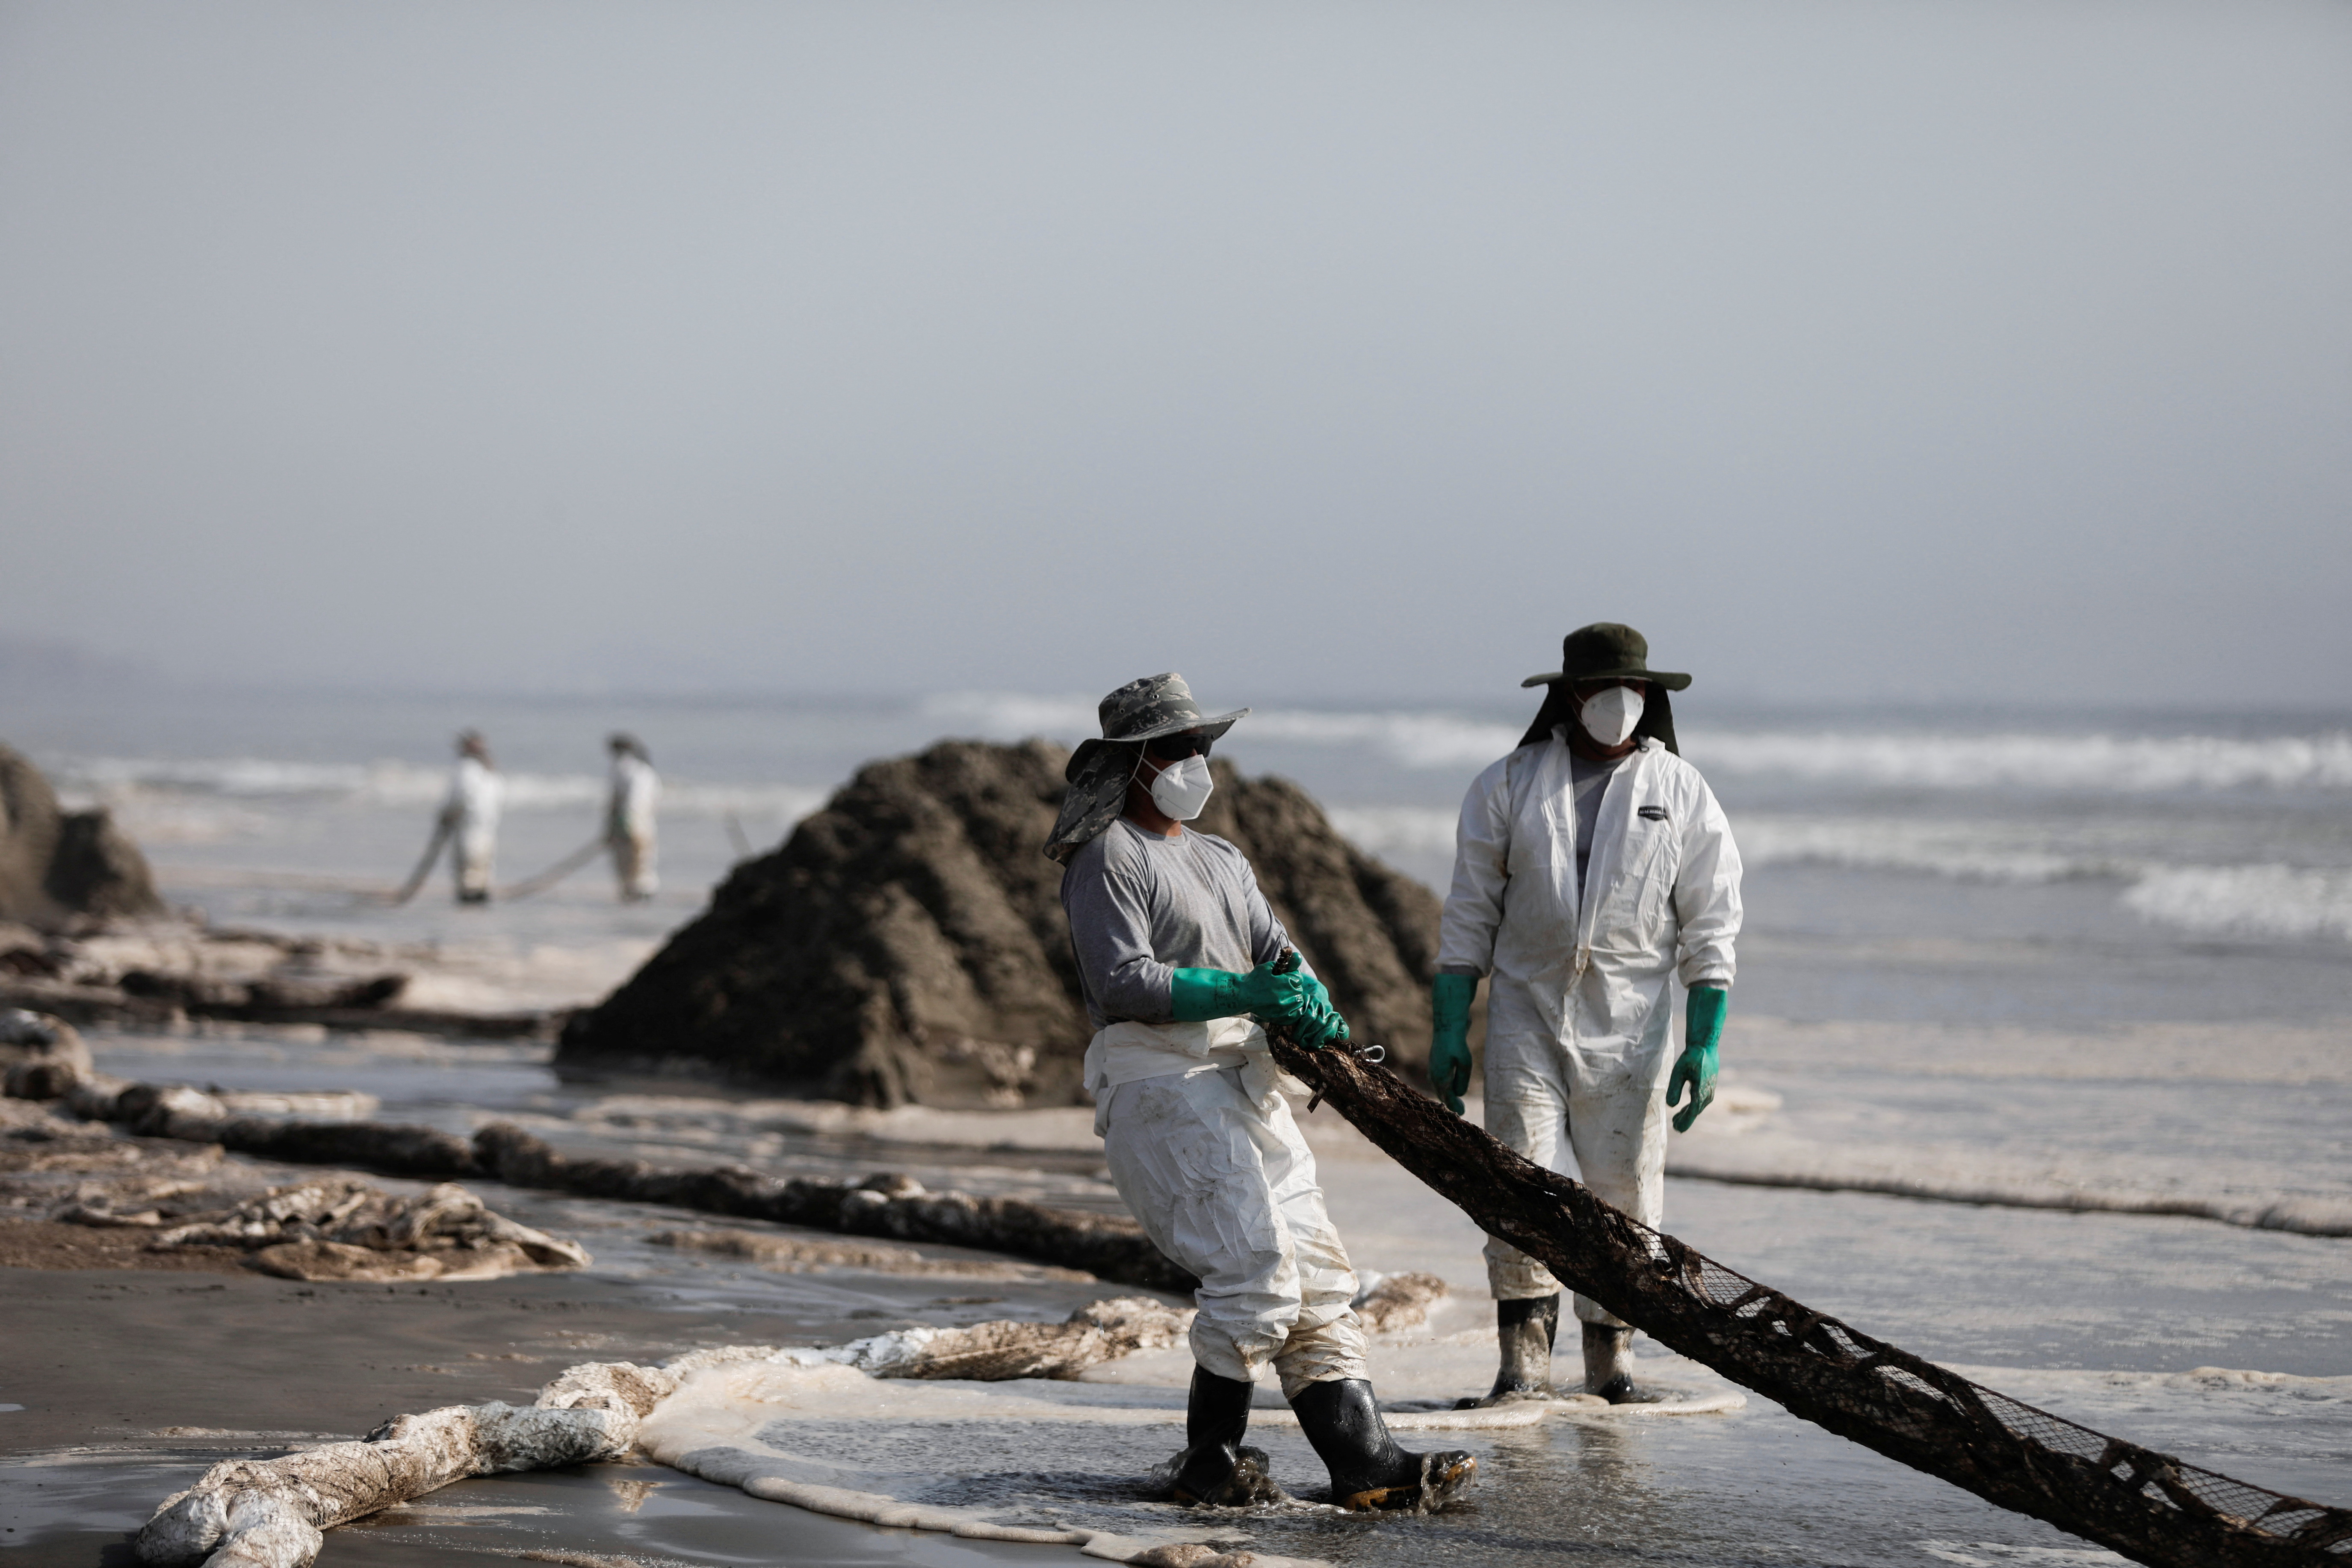 La Marina de Guerra y la empresa Repsol tiene versiones distintas de las causas del derrame de Petróleo | REUTERS/Angela Ponce